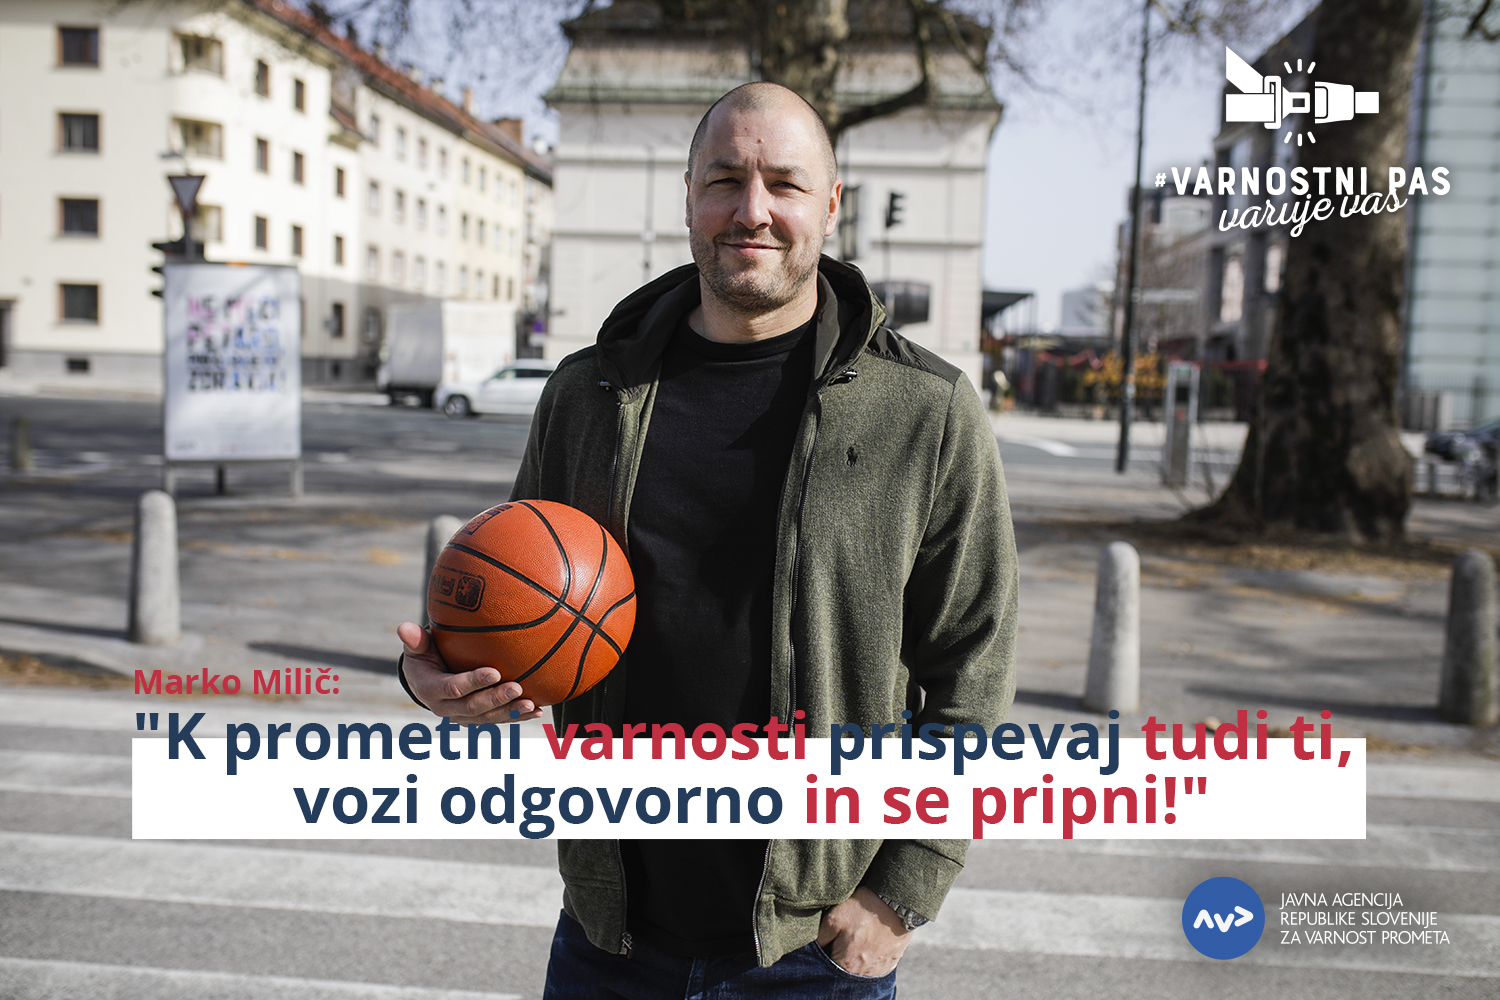 Varnostni pas nacionalna preventivna akcija in košarkar Marko Milič